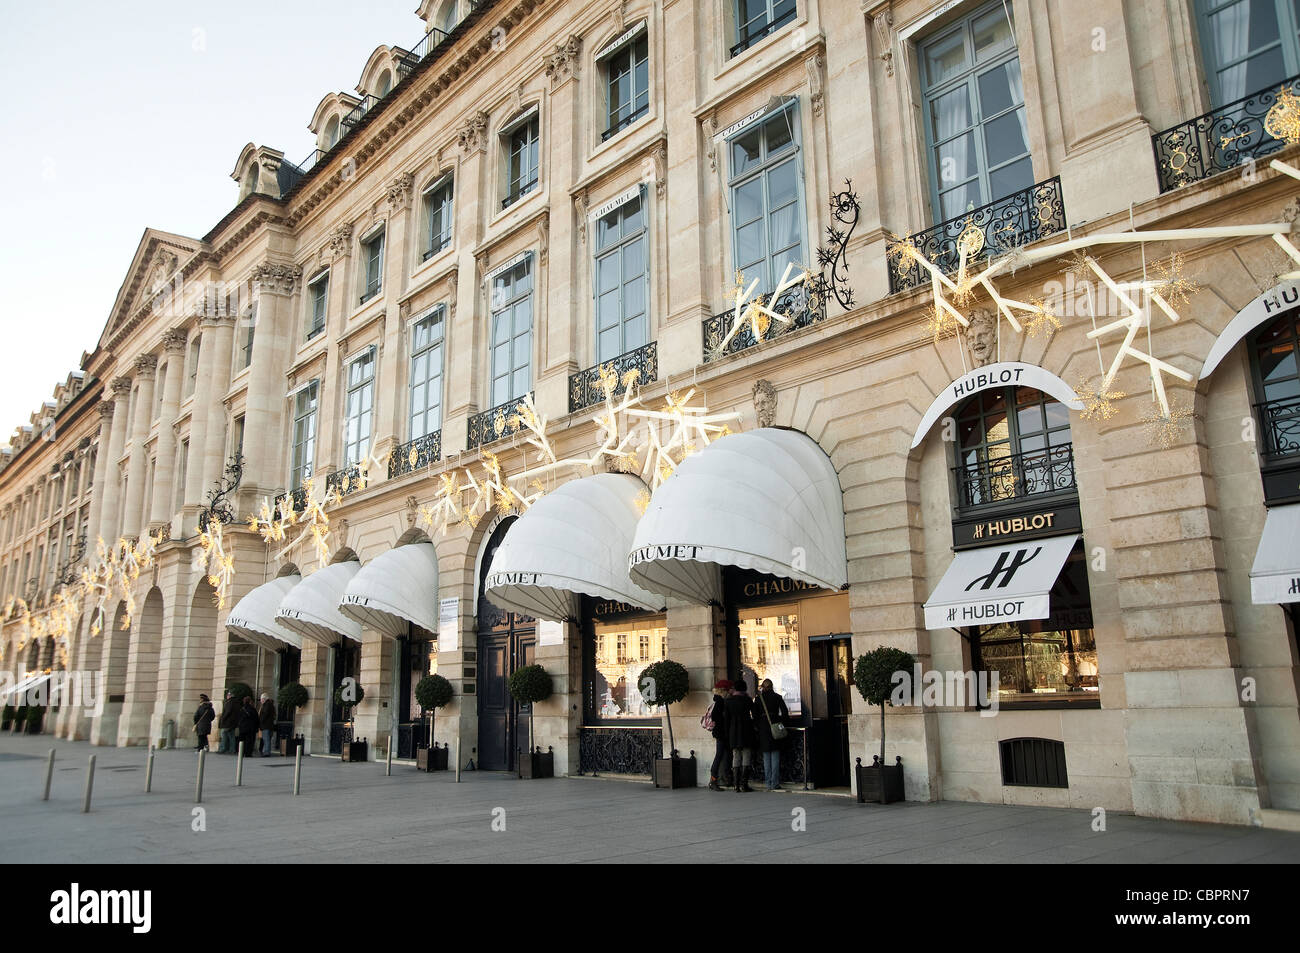 The flagship Louis Vuitton store at Place Vendome, Paris, France